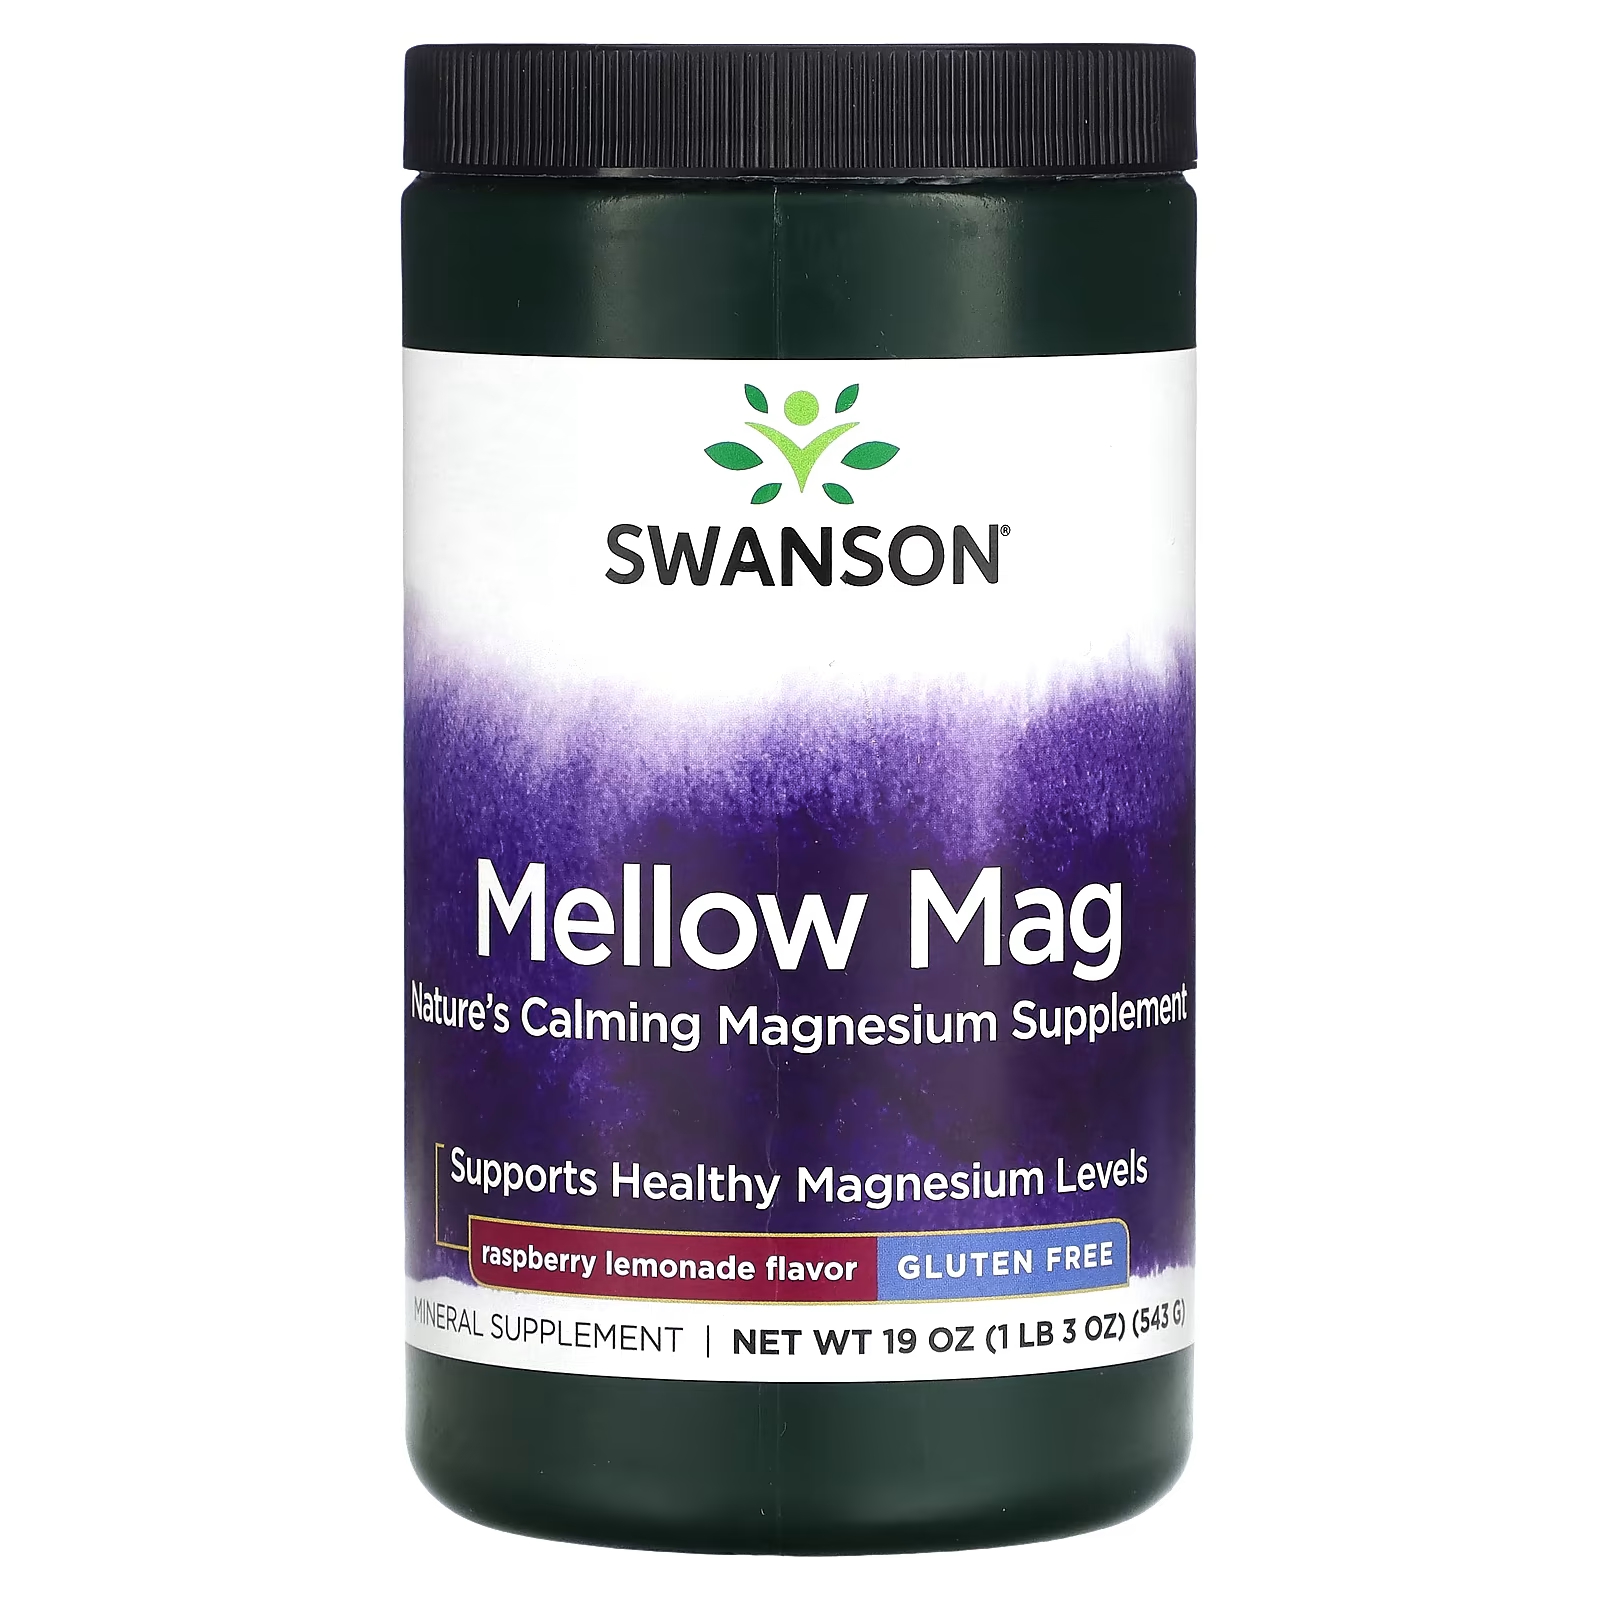 Пищевая добавка Swanson Mellow Mag со вкусом малинового лимонада, 554 г пищевая добавка swanson mellow mag со вкусом малинового лимонада 554 г